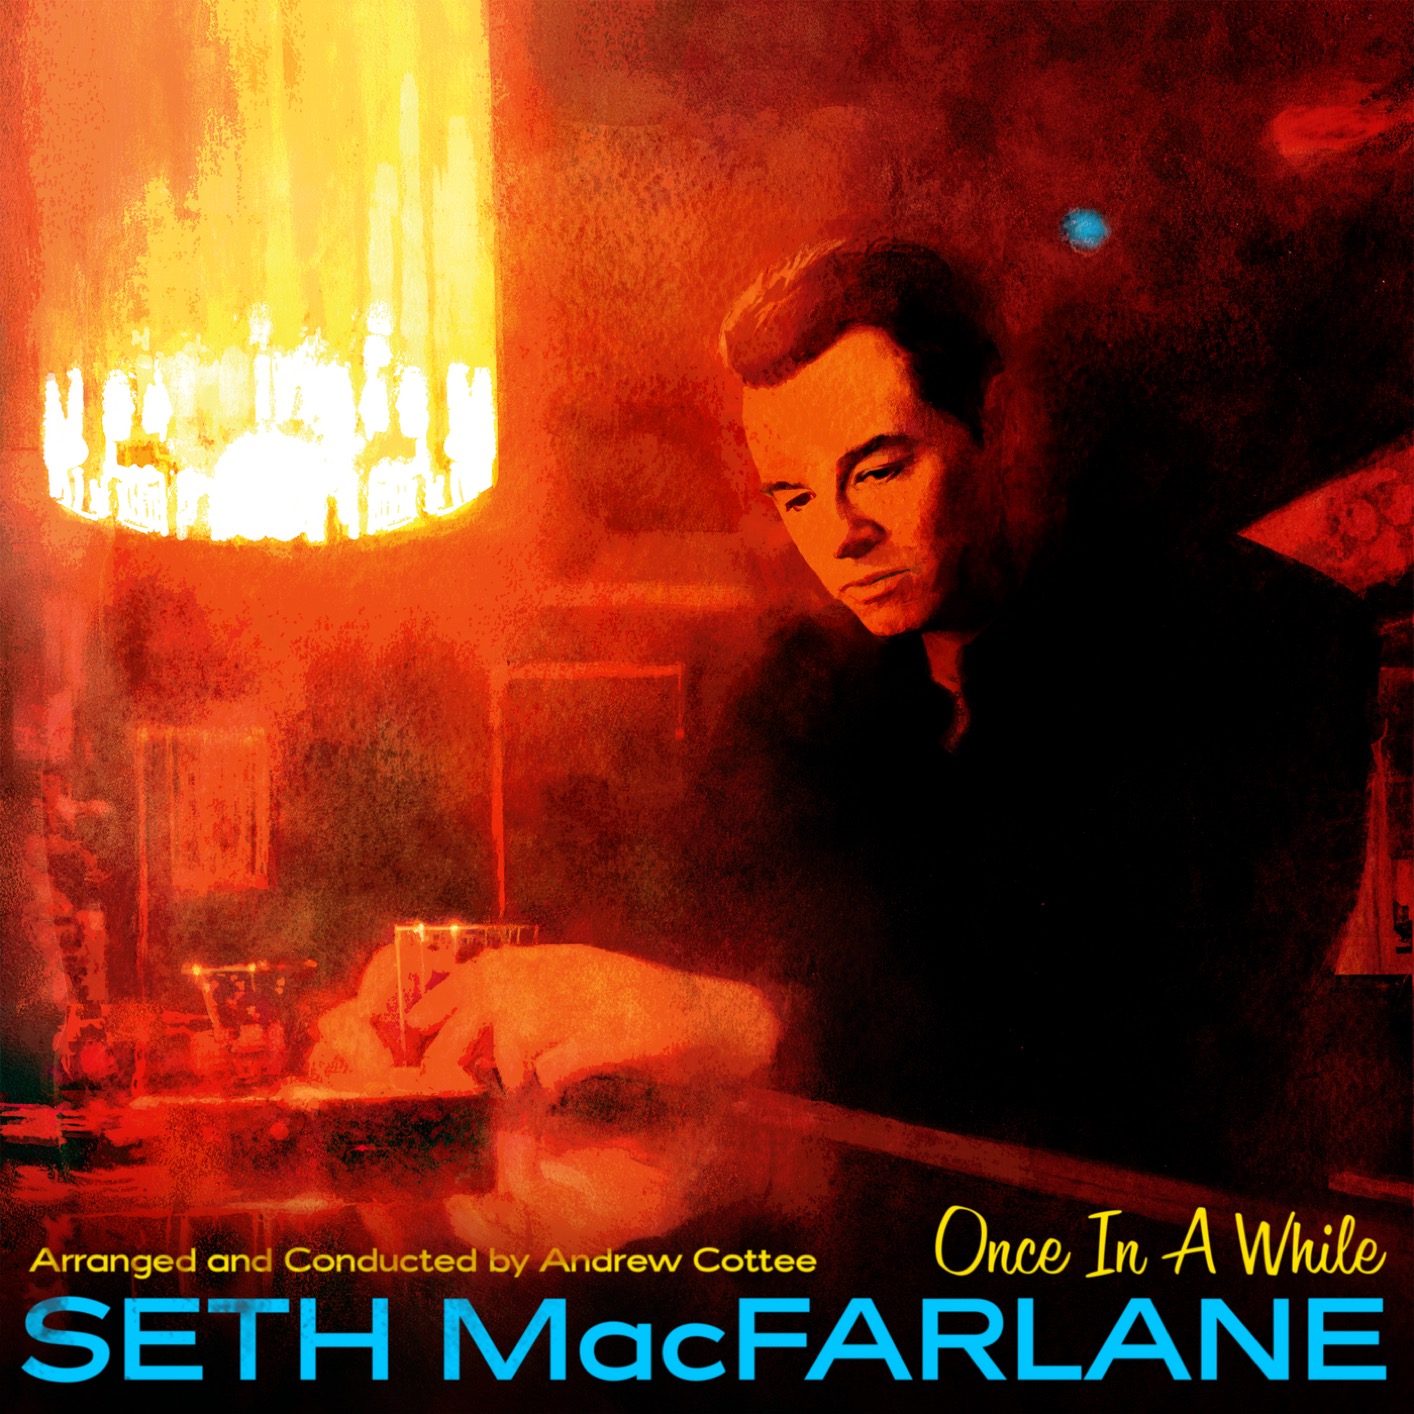 Seth MacFarlane - Once In A While (2019) [FLAC 24bit/48kHz]